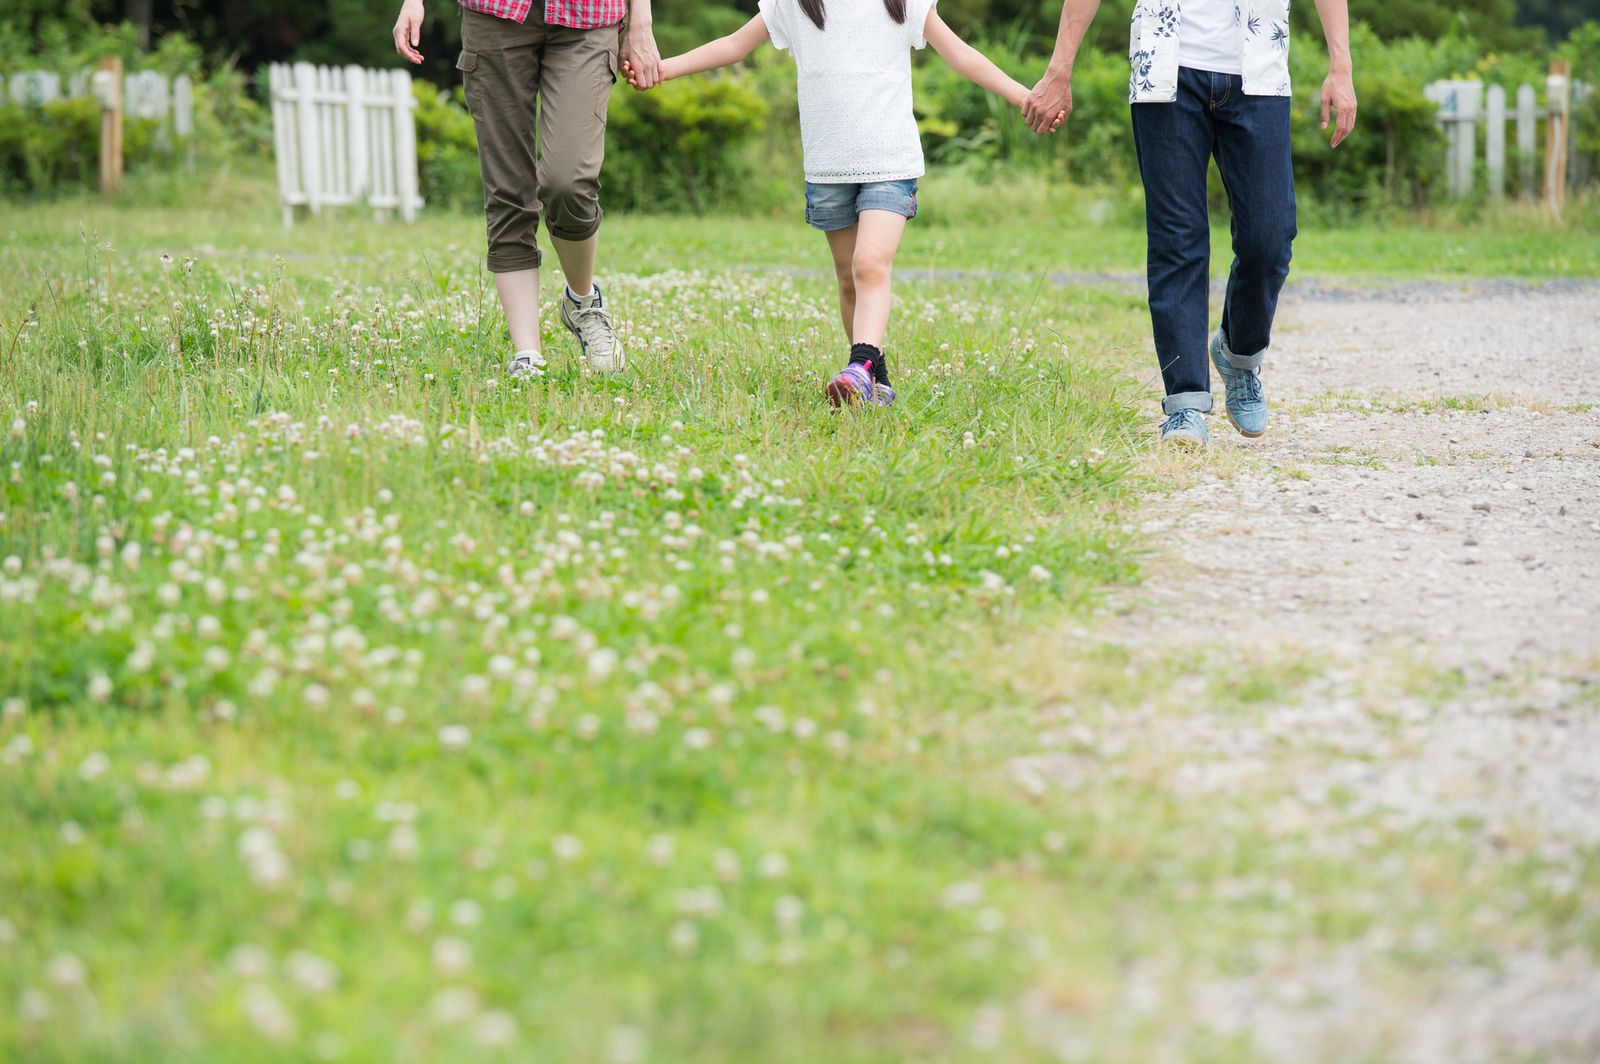 この週末はココで決まり 埼玉の子供と遊べるおすすめの公園15選 Retrip リトリップ